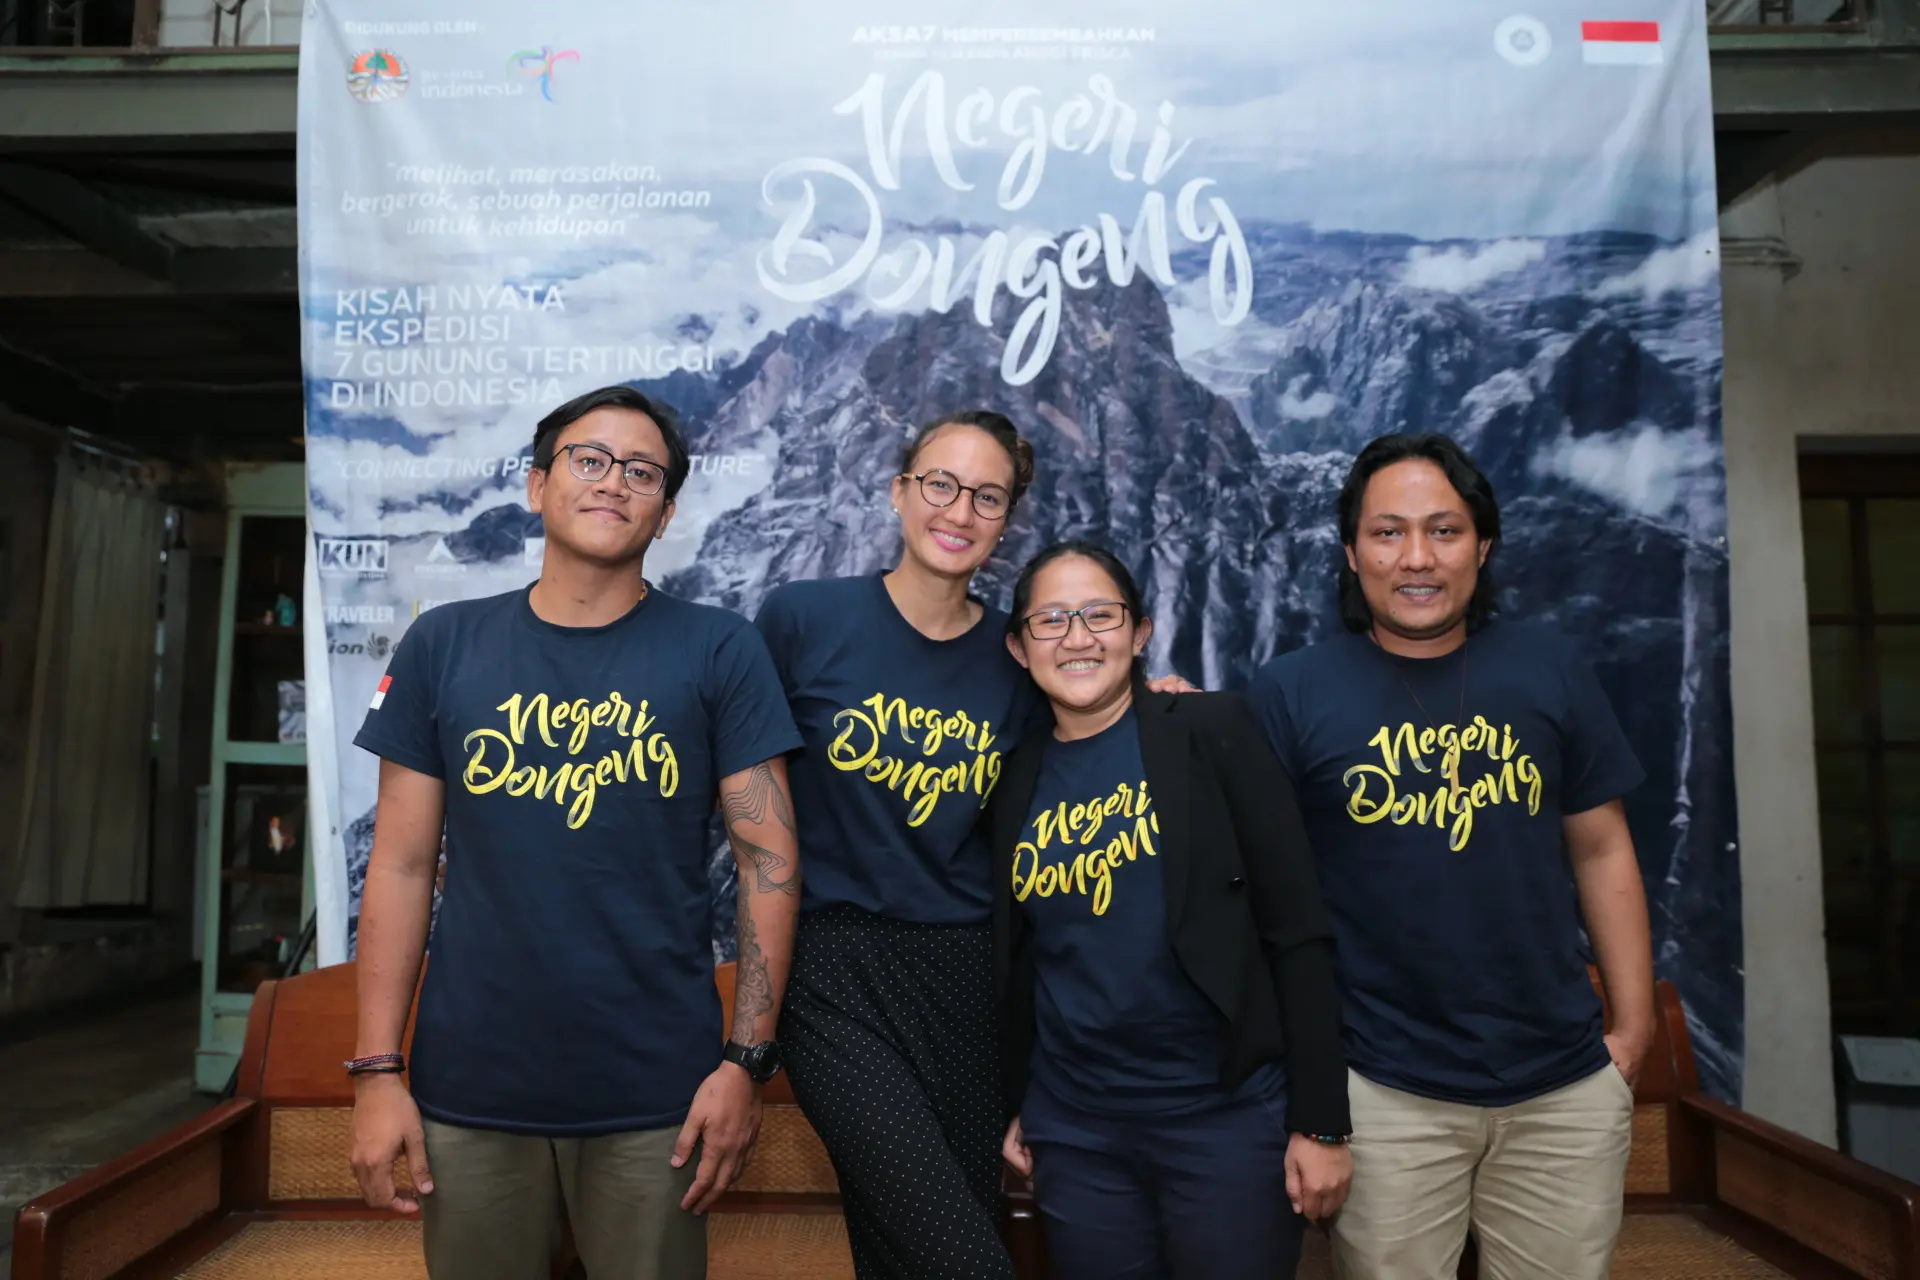 Film Negeri Dongeng merupakan film dokumenter yang dibuat oleh tujuh sineas muda saat proses mendaki tujuh puncak tertinggi di Indonesia. Film disutradarai Anggi Frisca, rencananya tayang di bioskop mulai tanggal 26 Oktober 2017.(Adrian Putra/Bintang.com)